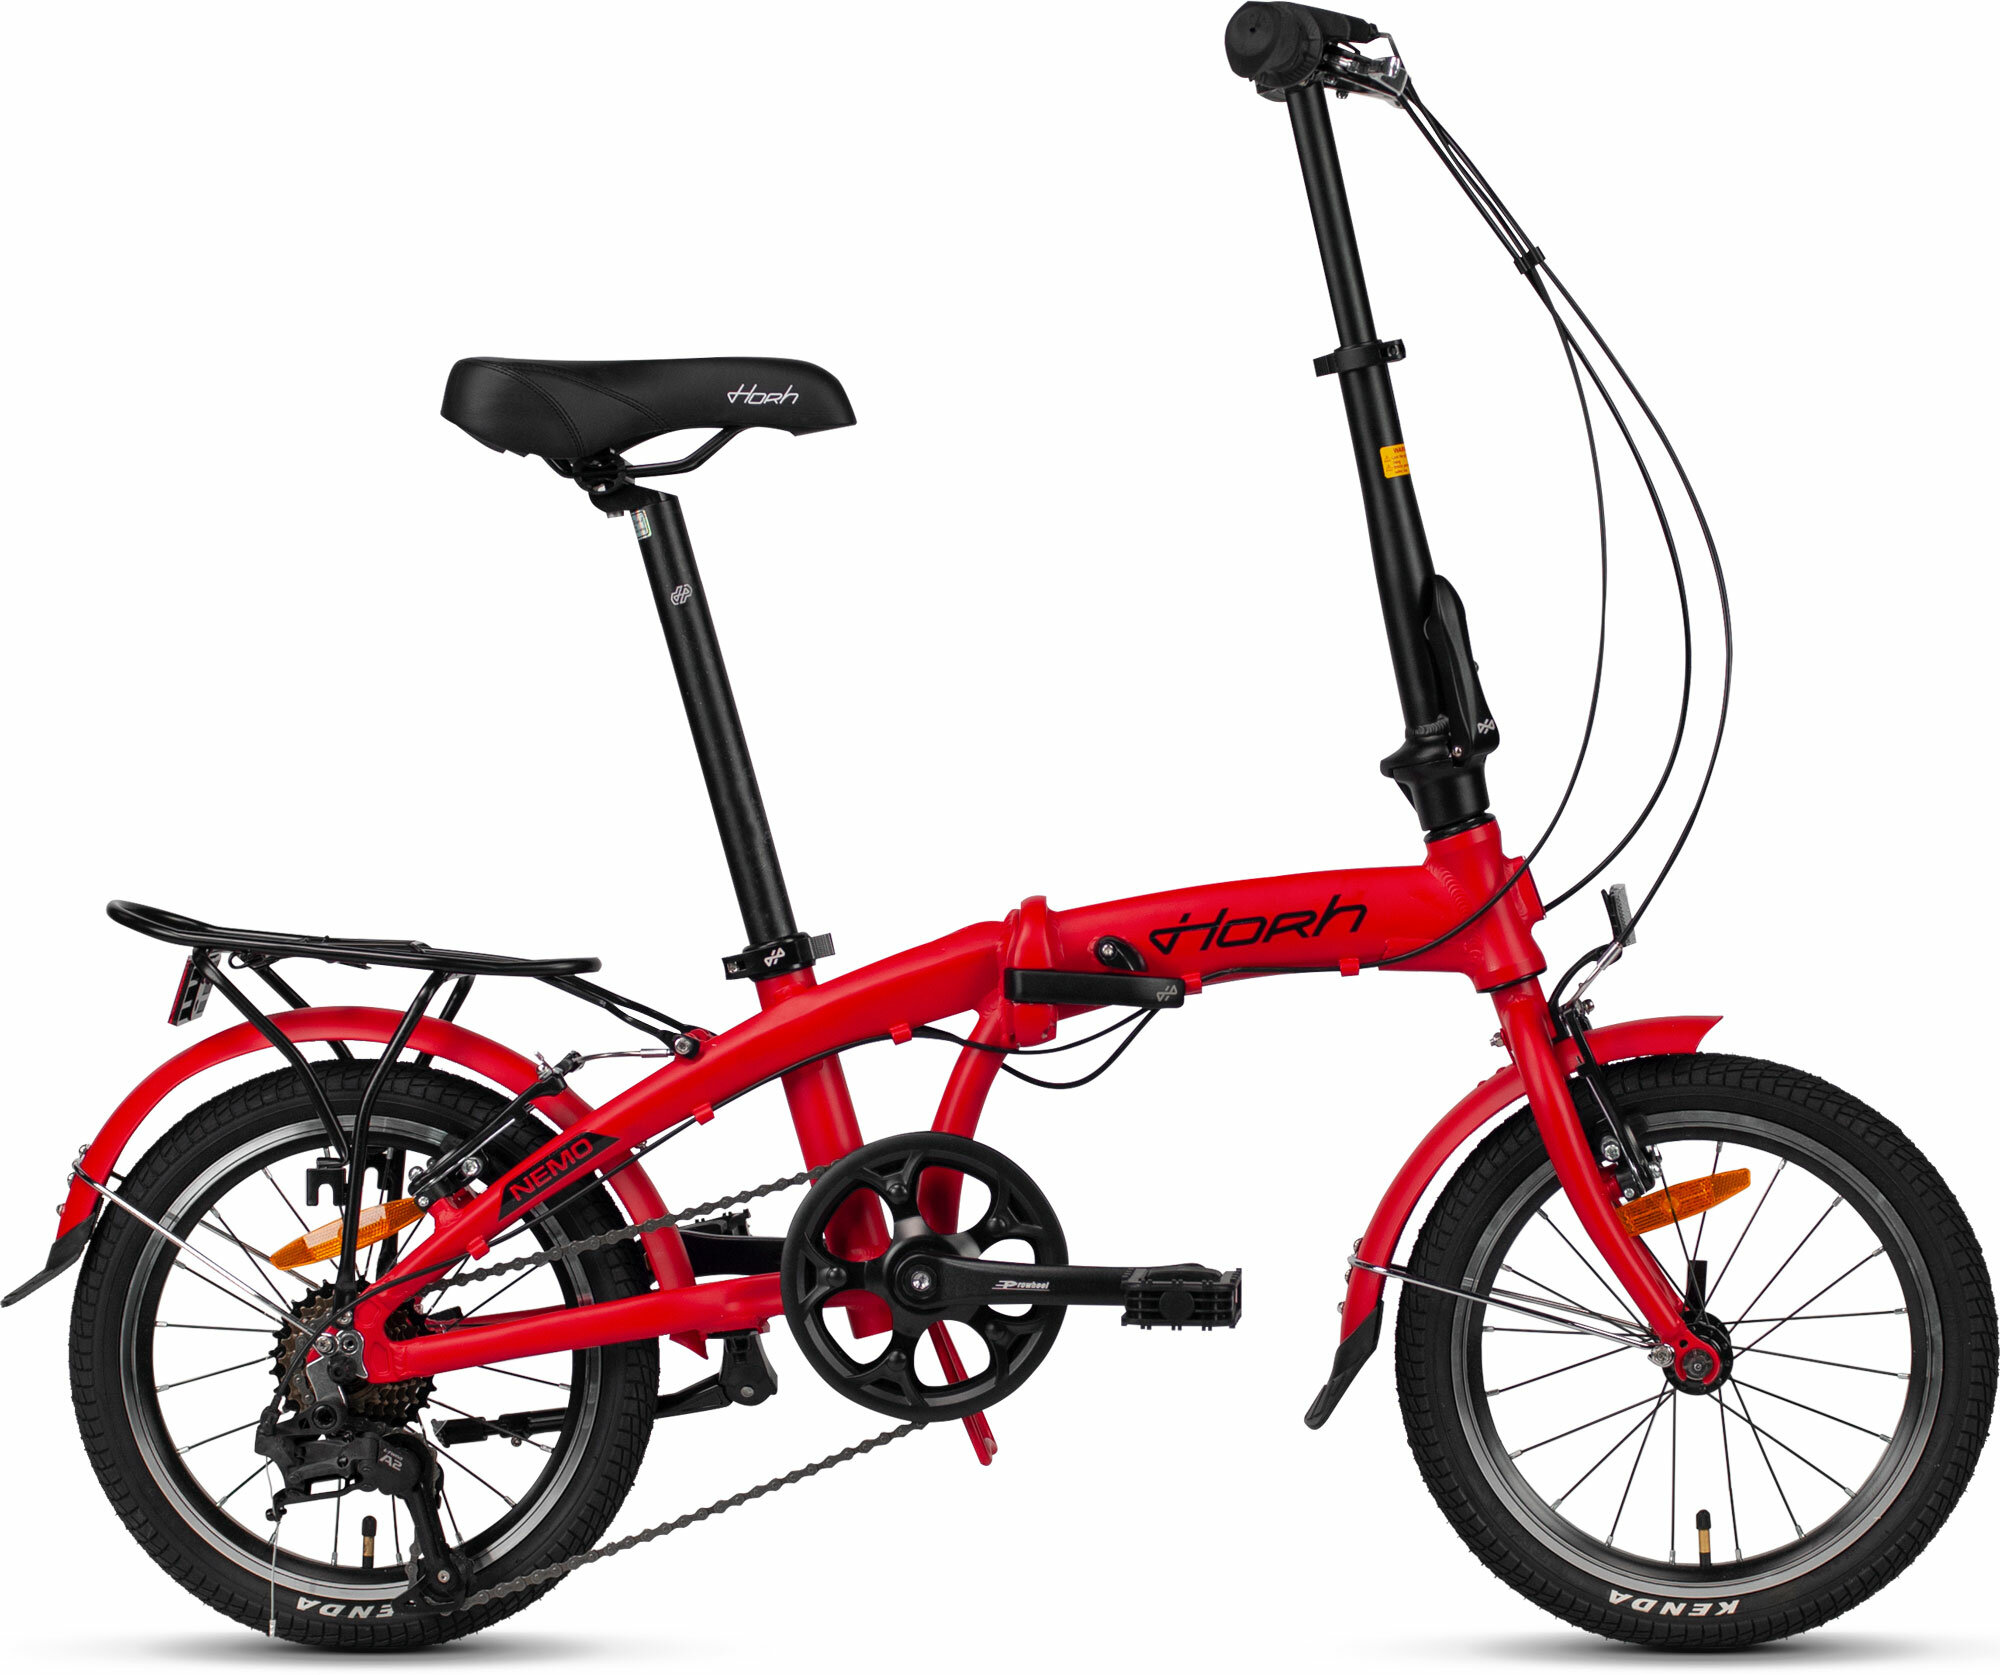 Велосипед складной HORH NEMO 16" (2024), ригид, складная рама, взрослый, женский, мужской, алюминиевая рама, 7 скоростей, ободные тормоза, цвет Red-Black, красный/черный цвет, размер рамы 16", для роста 150-180 см